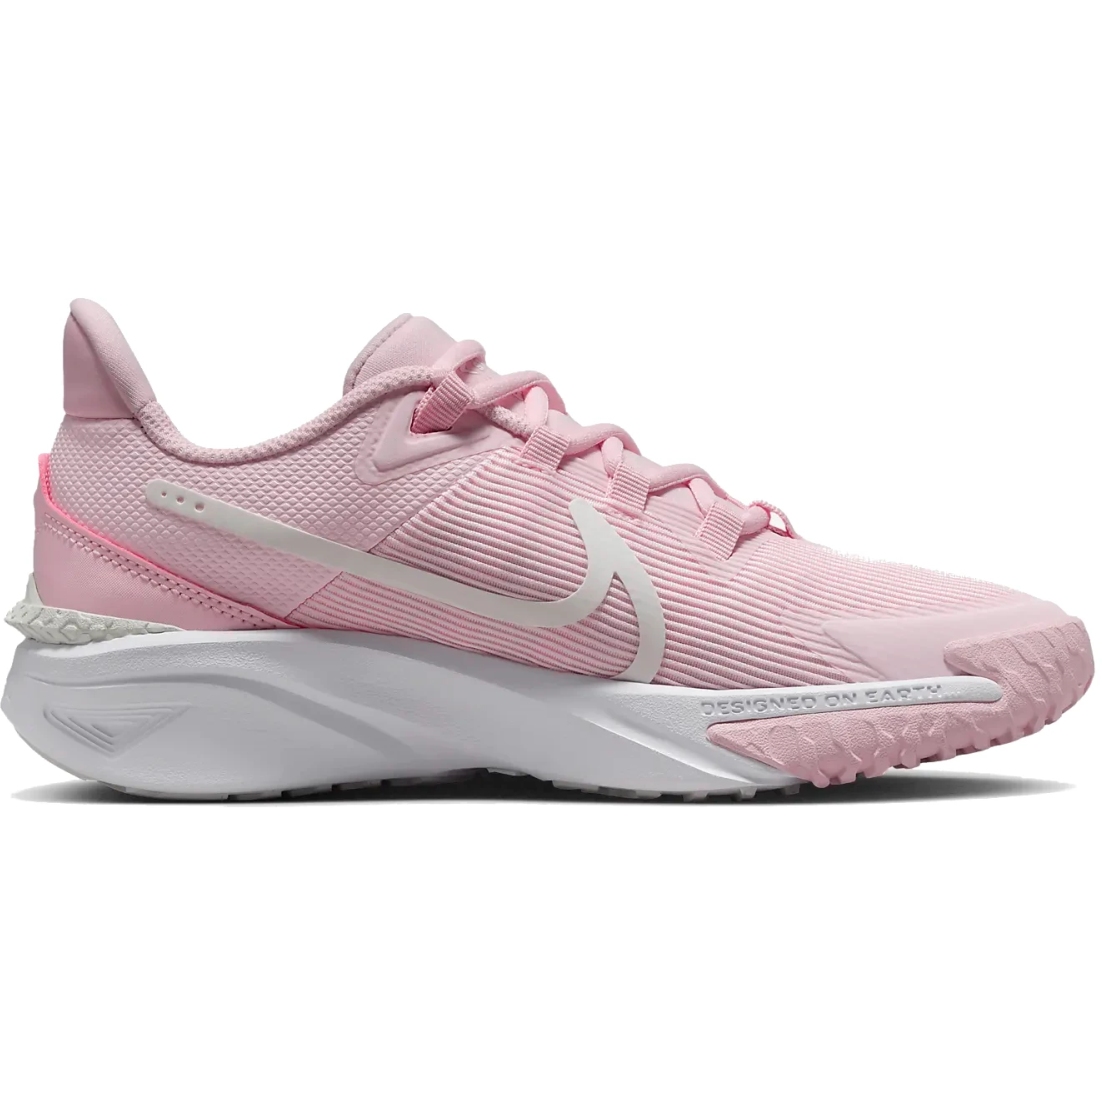 Produktbild von Nike Star Runner 4 Schuhe für Kinder - pink foam/white/summit white DX7615-602